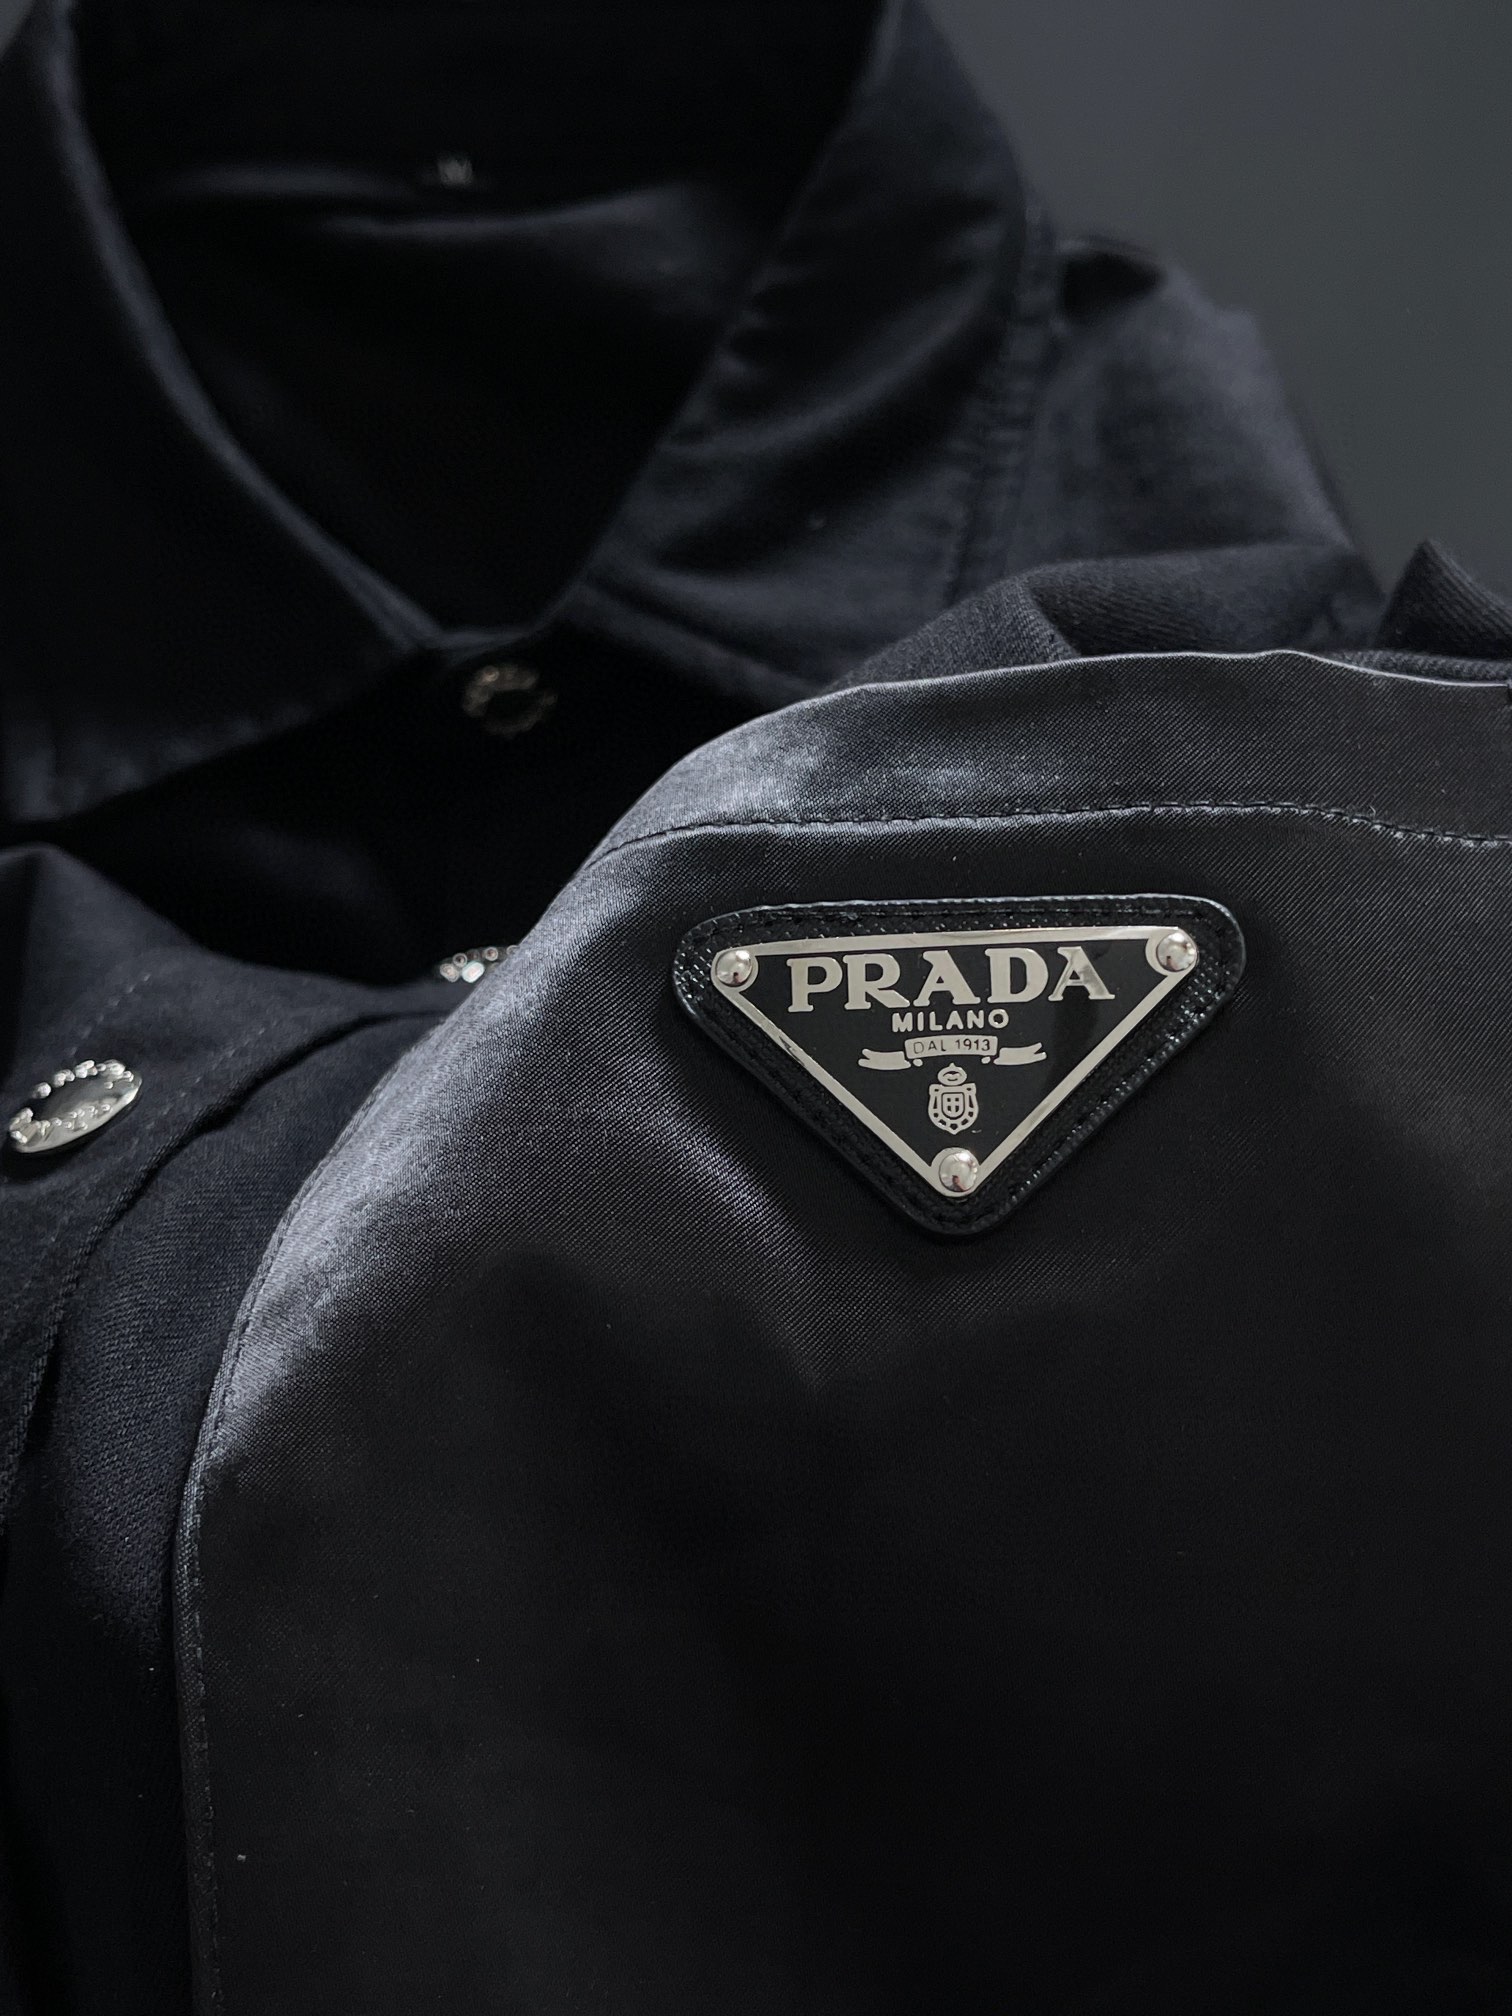 PRAD24SS最顶级版本新款经典三角金属夹克衬衫顶级专柜款面料柔软上身超棒专柜版型顶级面料版型超好耐穿